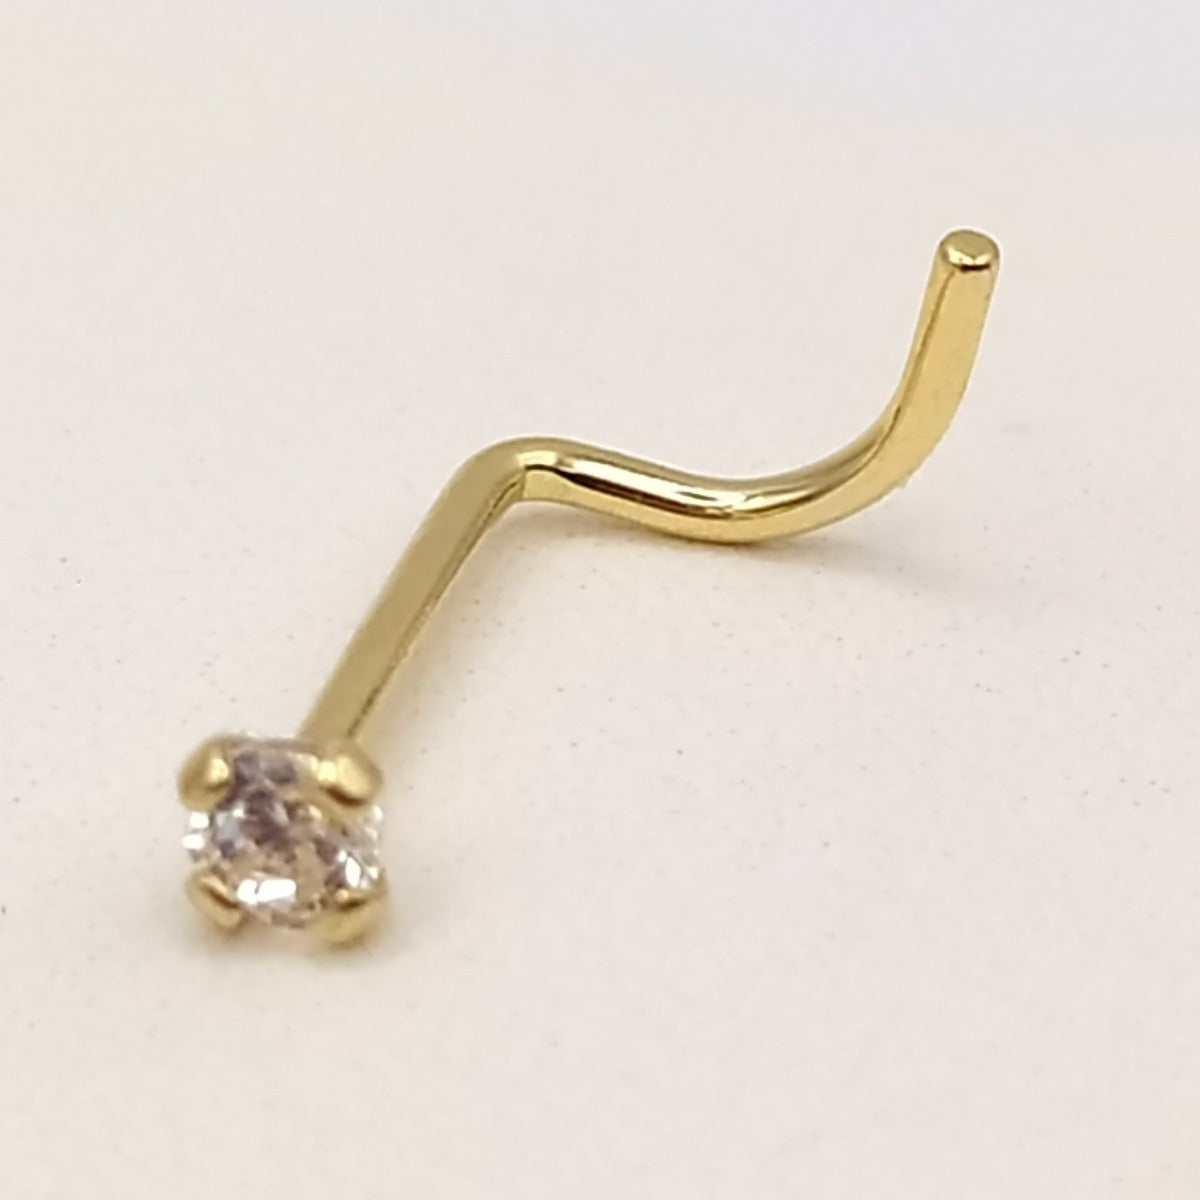 Un piercing de oro de 18 kilates para la nariz con circonita 2mm lateral